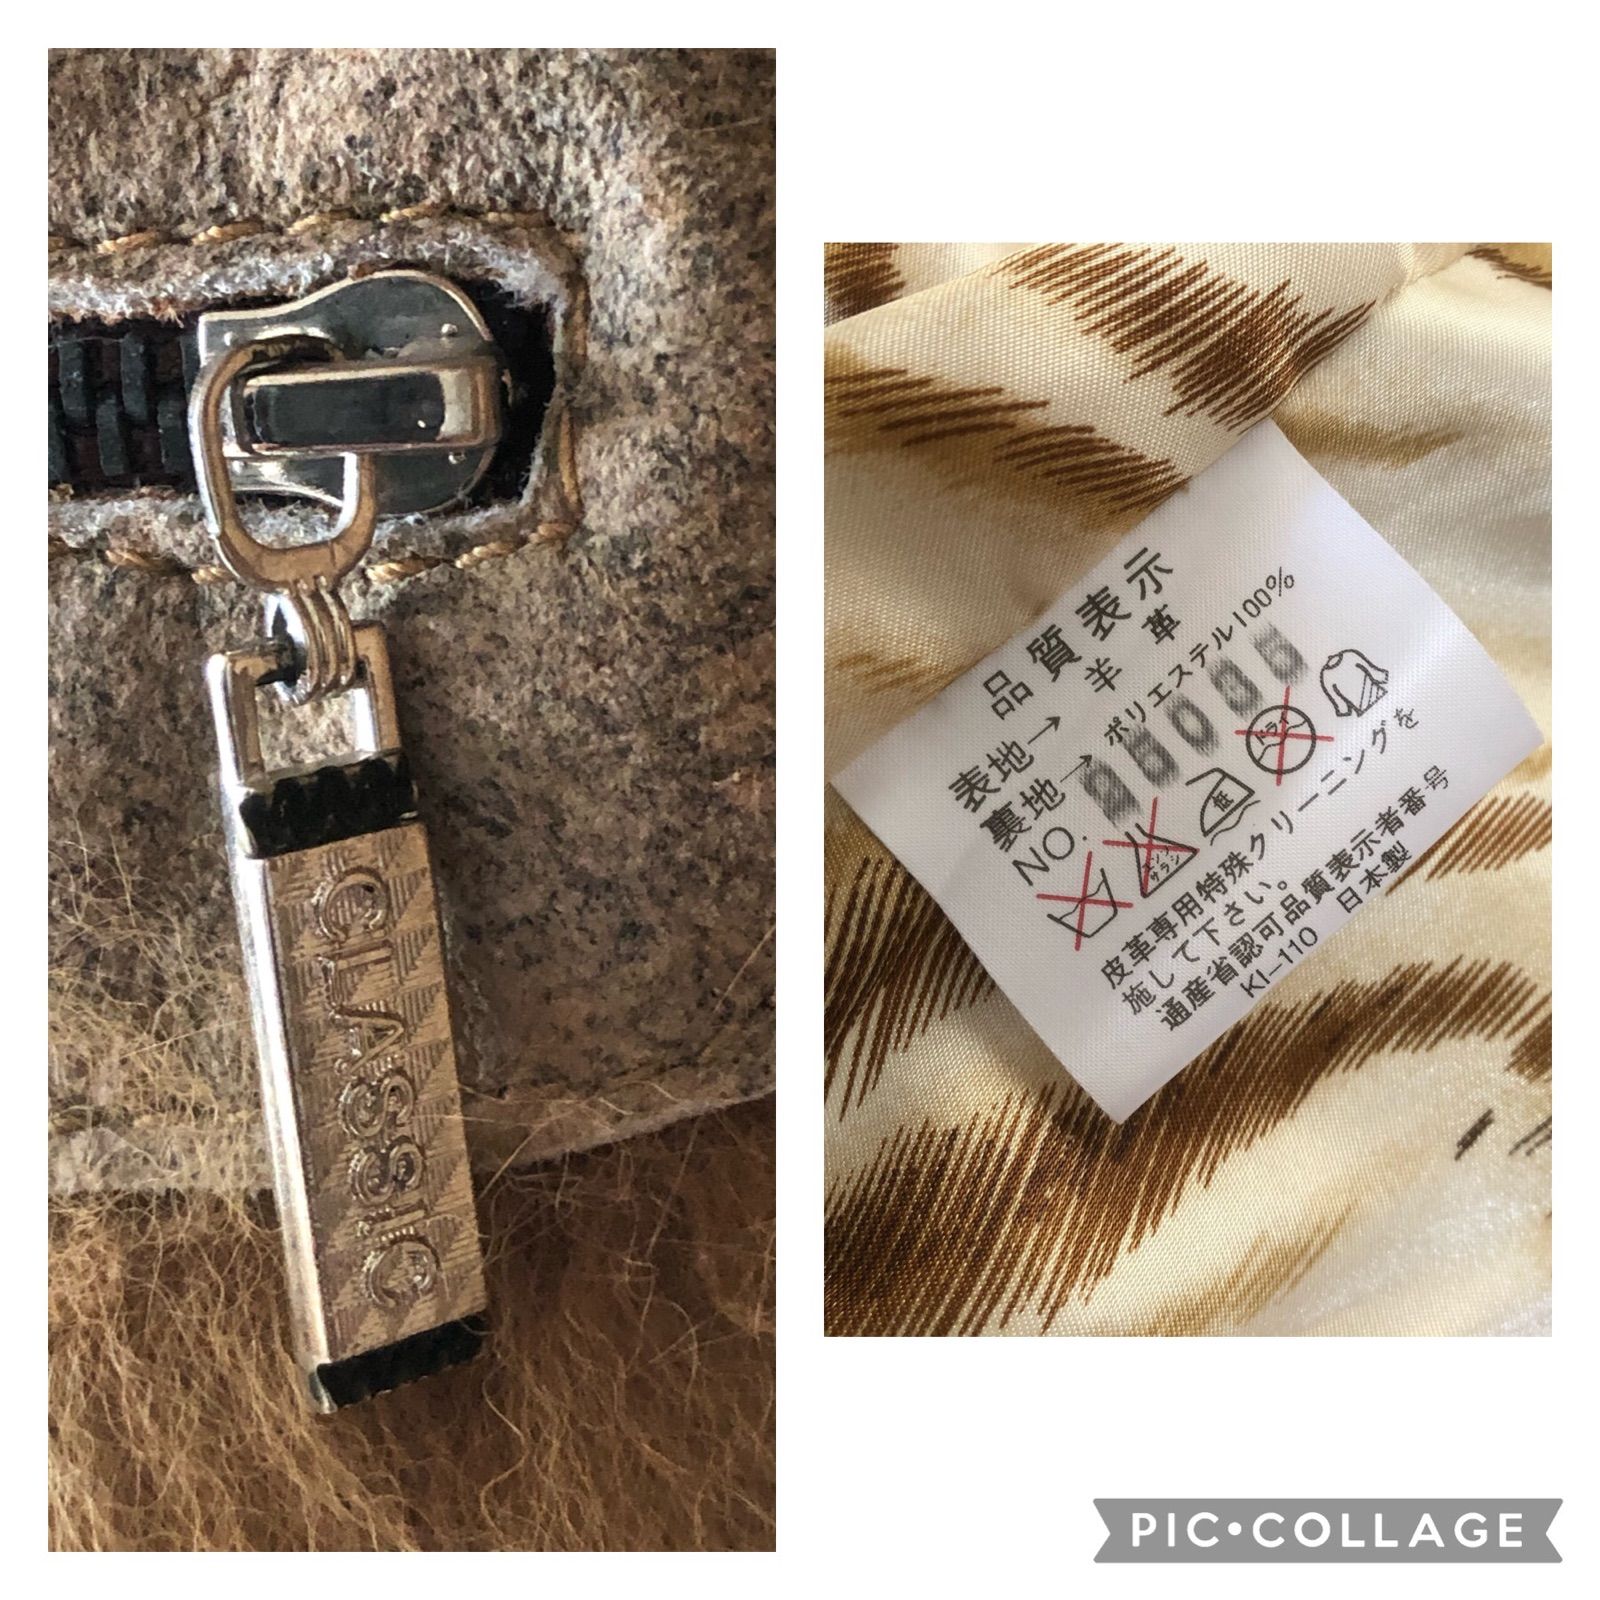 原産国日本【激レア高級感】CLASSIC 羊革 毛皮 ファーレザージャケット 日本製